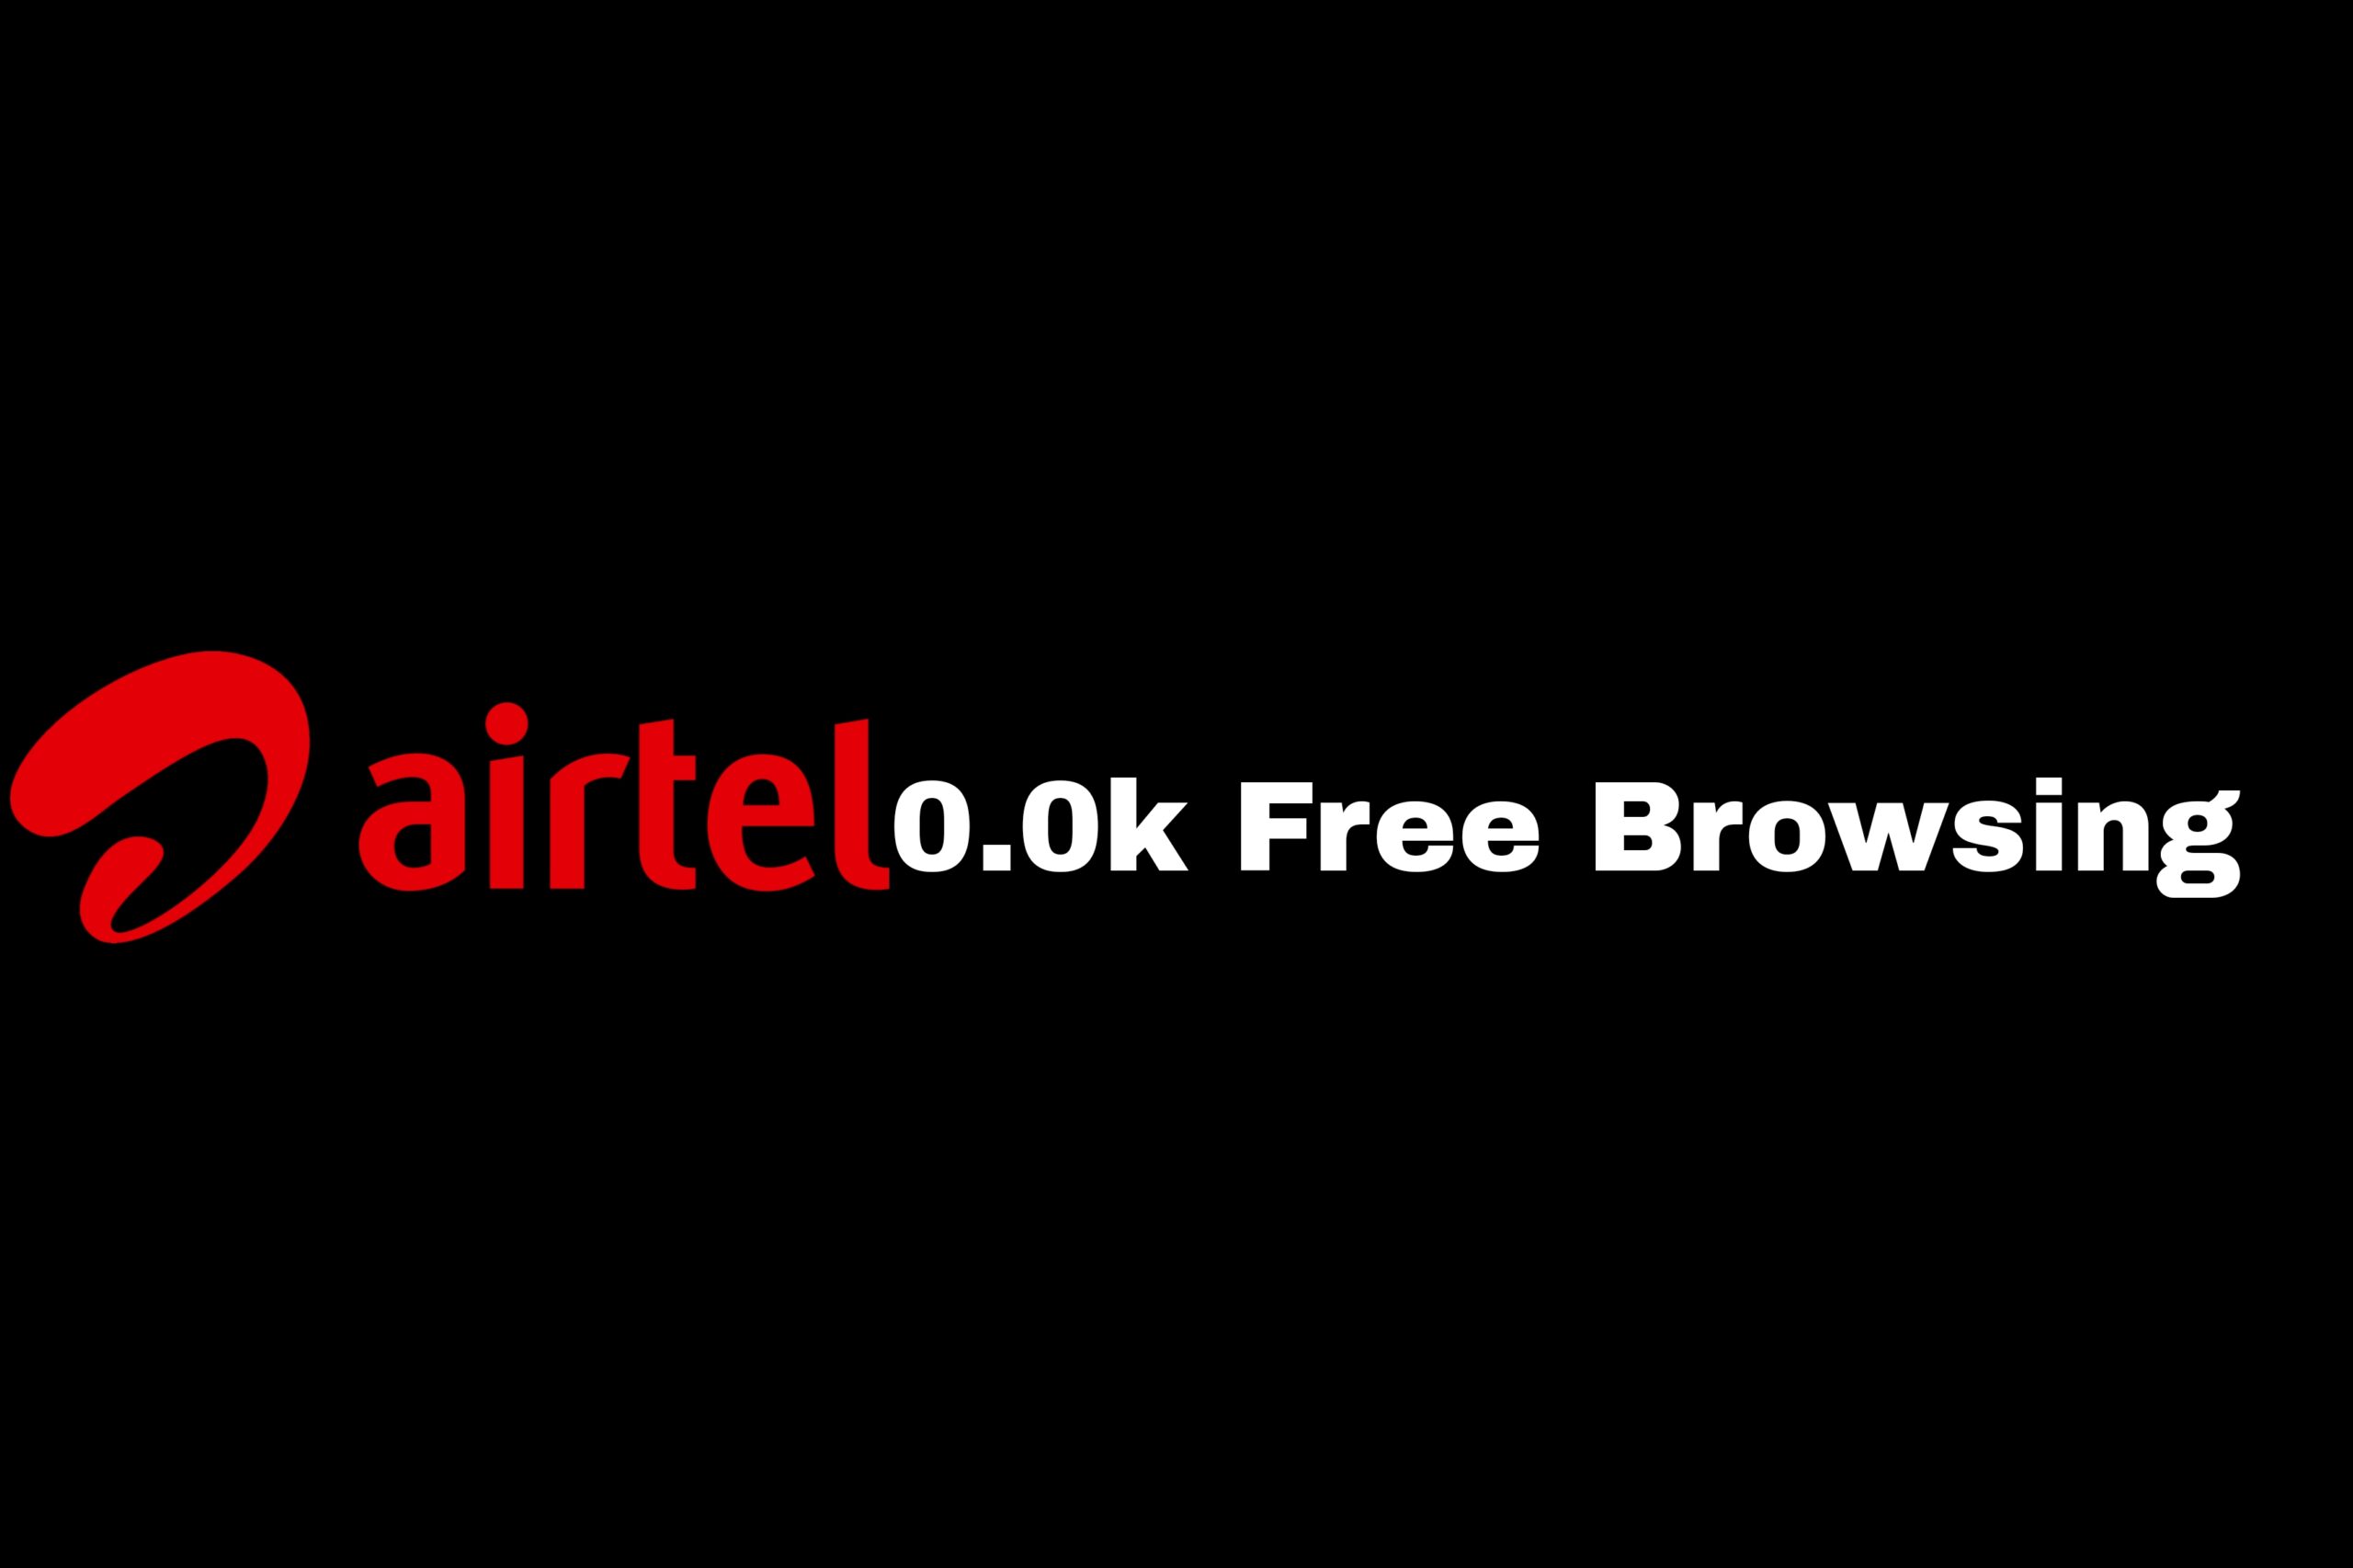 Airtel 0.0k free browsing